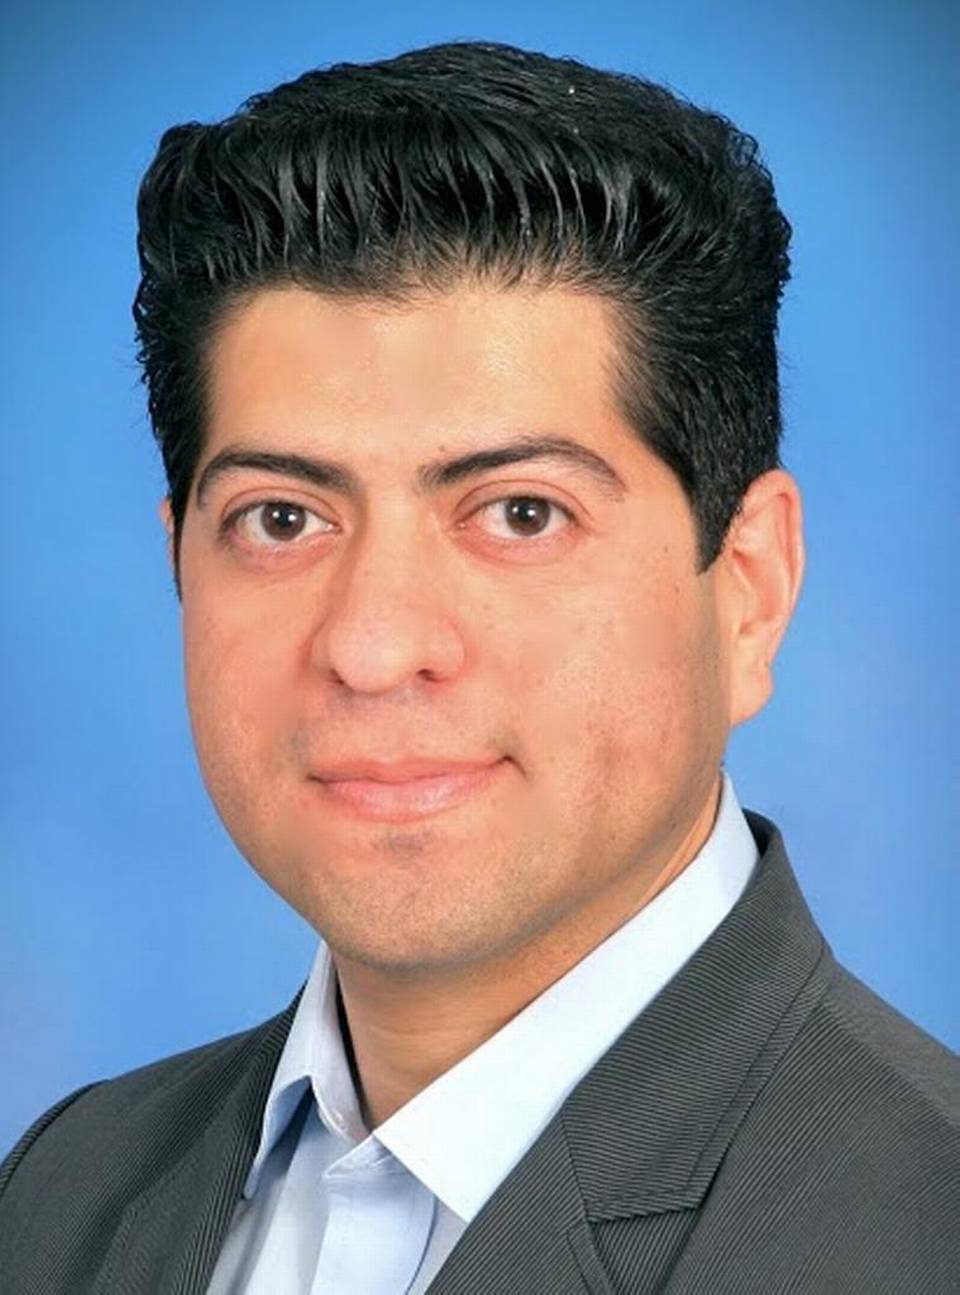 Portrait of Fresno City Councilman Luis Chavez